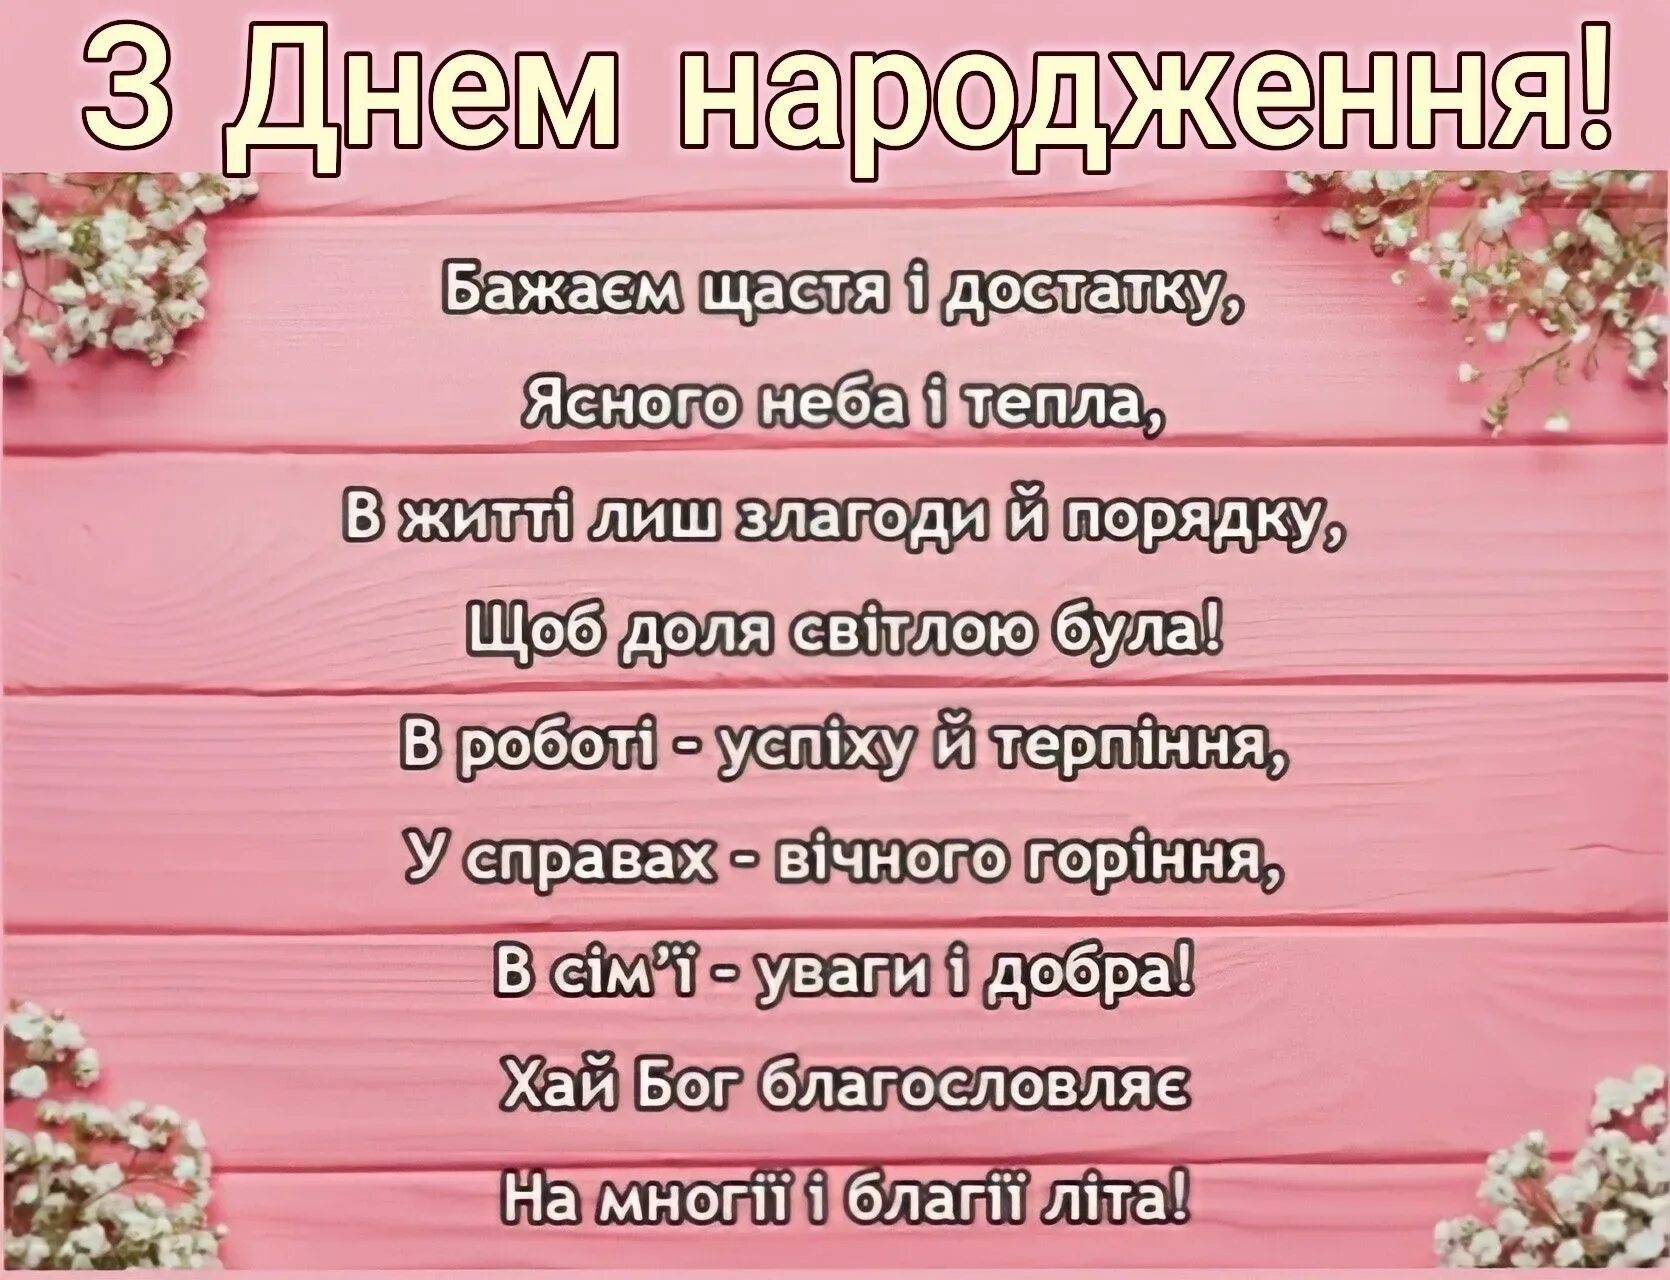 Слова з привітанням. Вітання з днем народження. Вітання з днем народження жінці. Привітання з днем народження на українській мові. Поздоровлення з днем народження на українській мові.